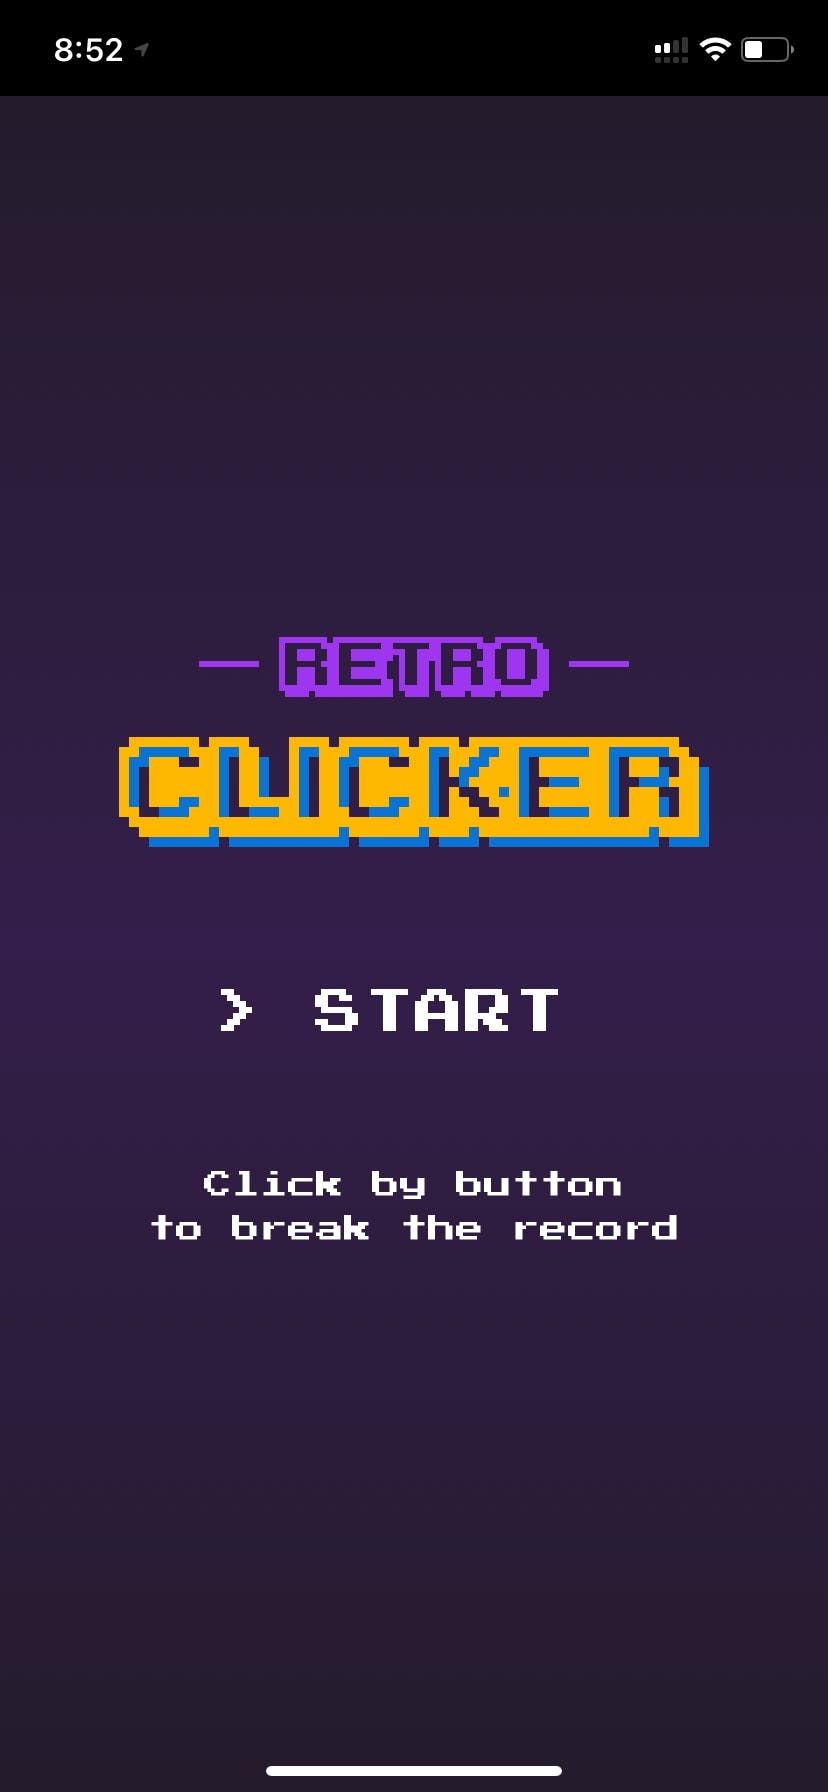 Retro Clicker Arcade media 1